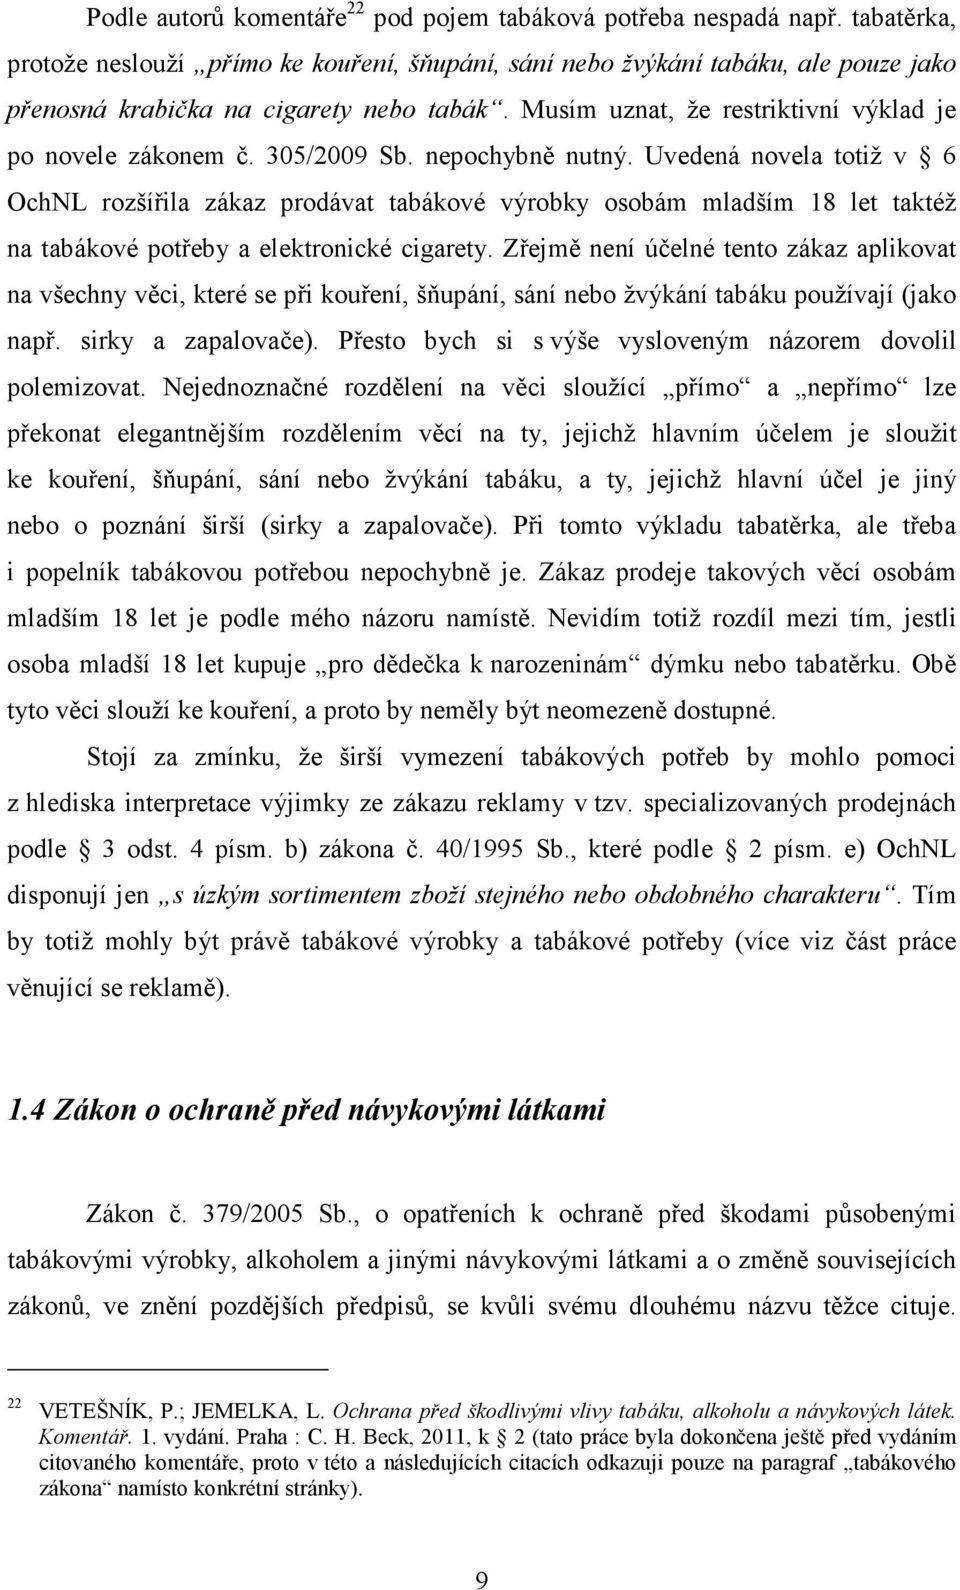 PROTIKUŘÁCKÁ LEGISLATIVA - PDF Stažení zdarma